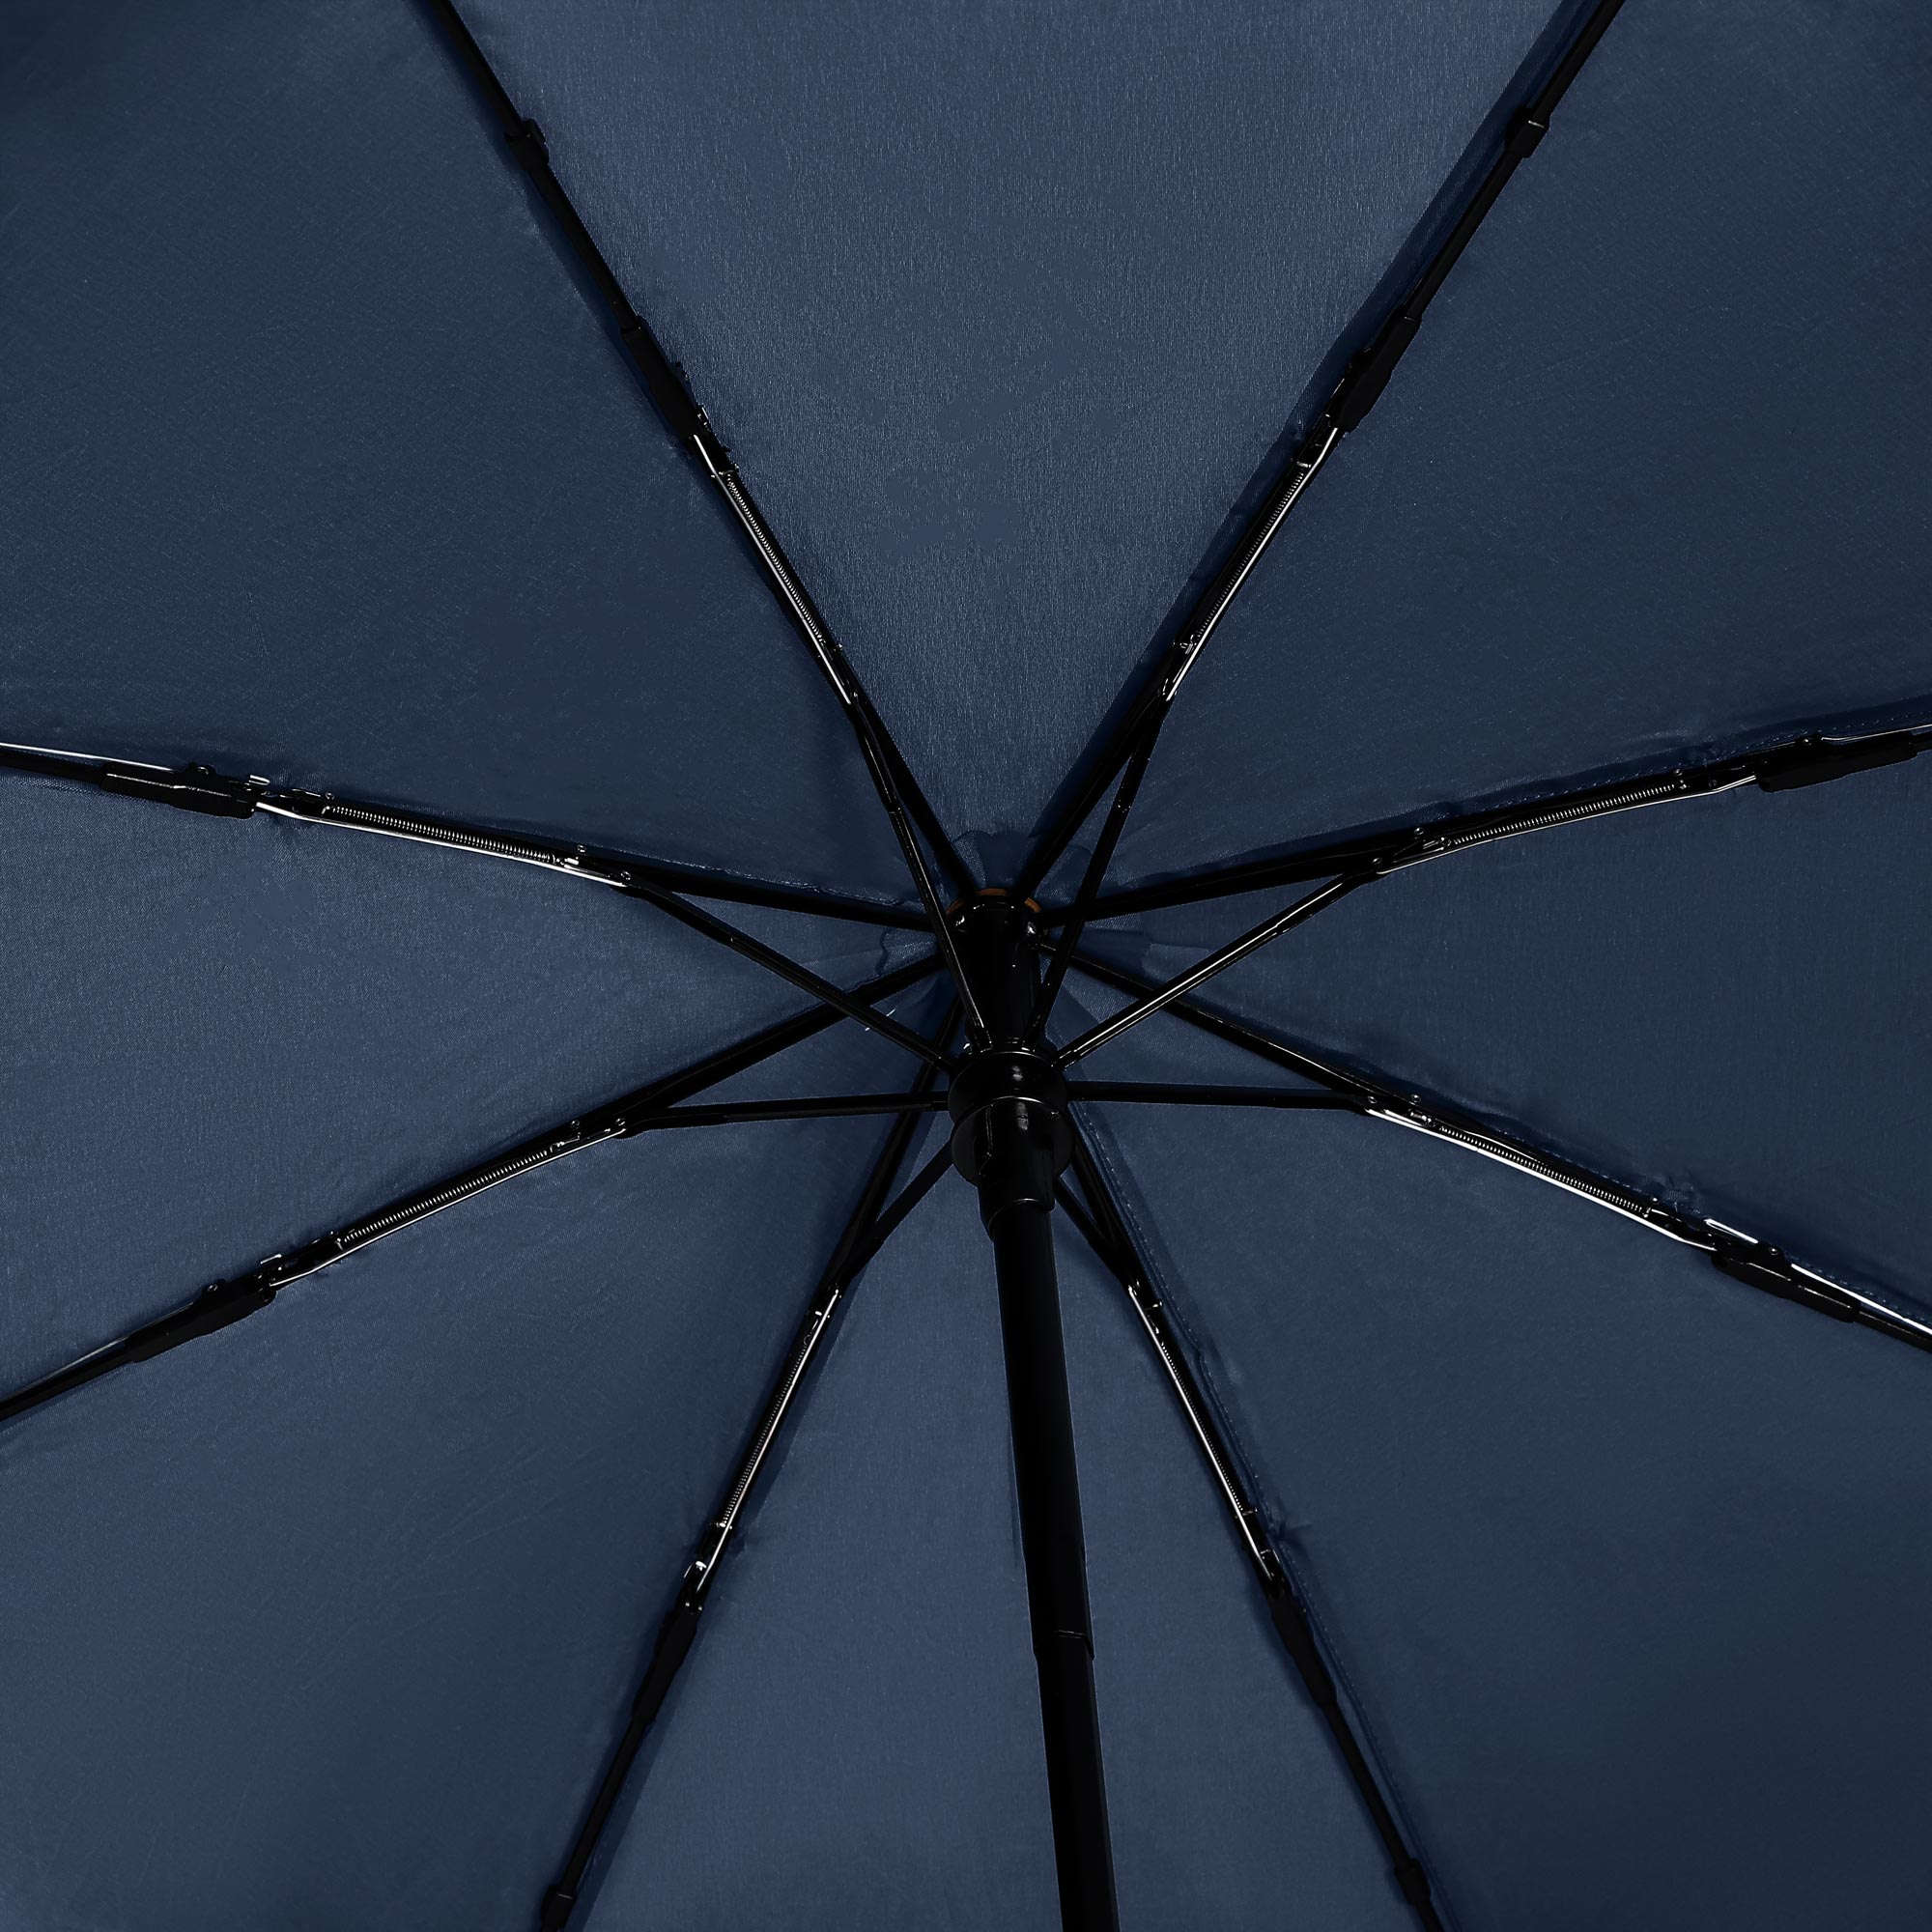 фото Ветроустойчивый зонт jiemailong полуавтоматический в ассортименте 53 см